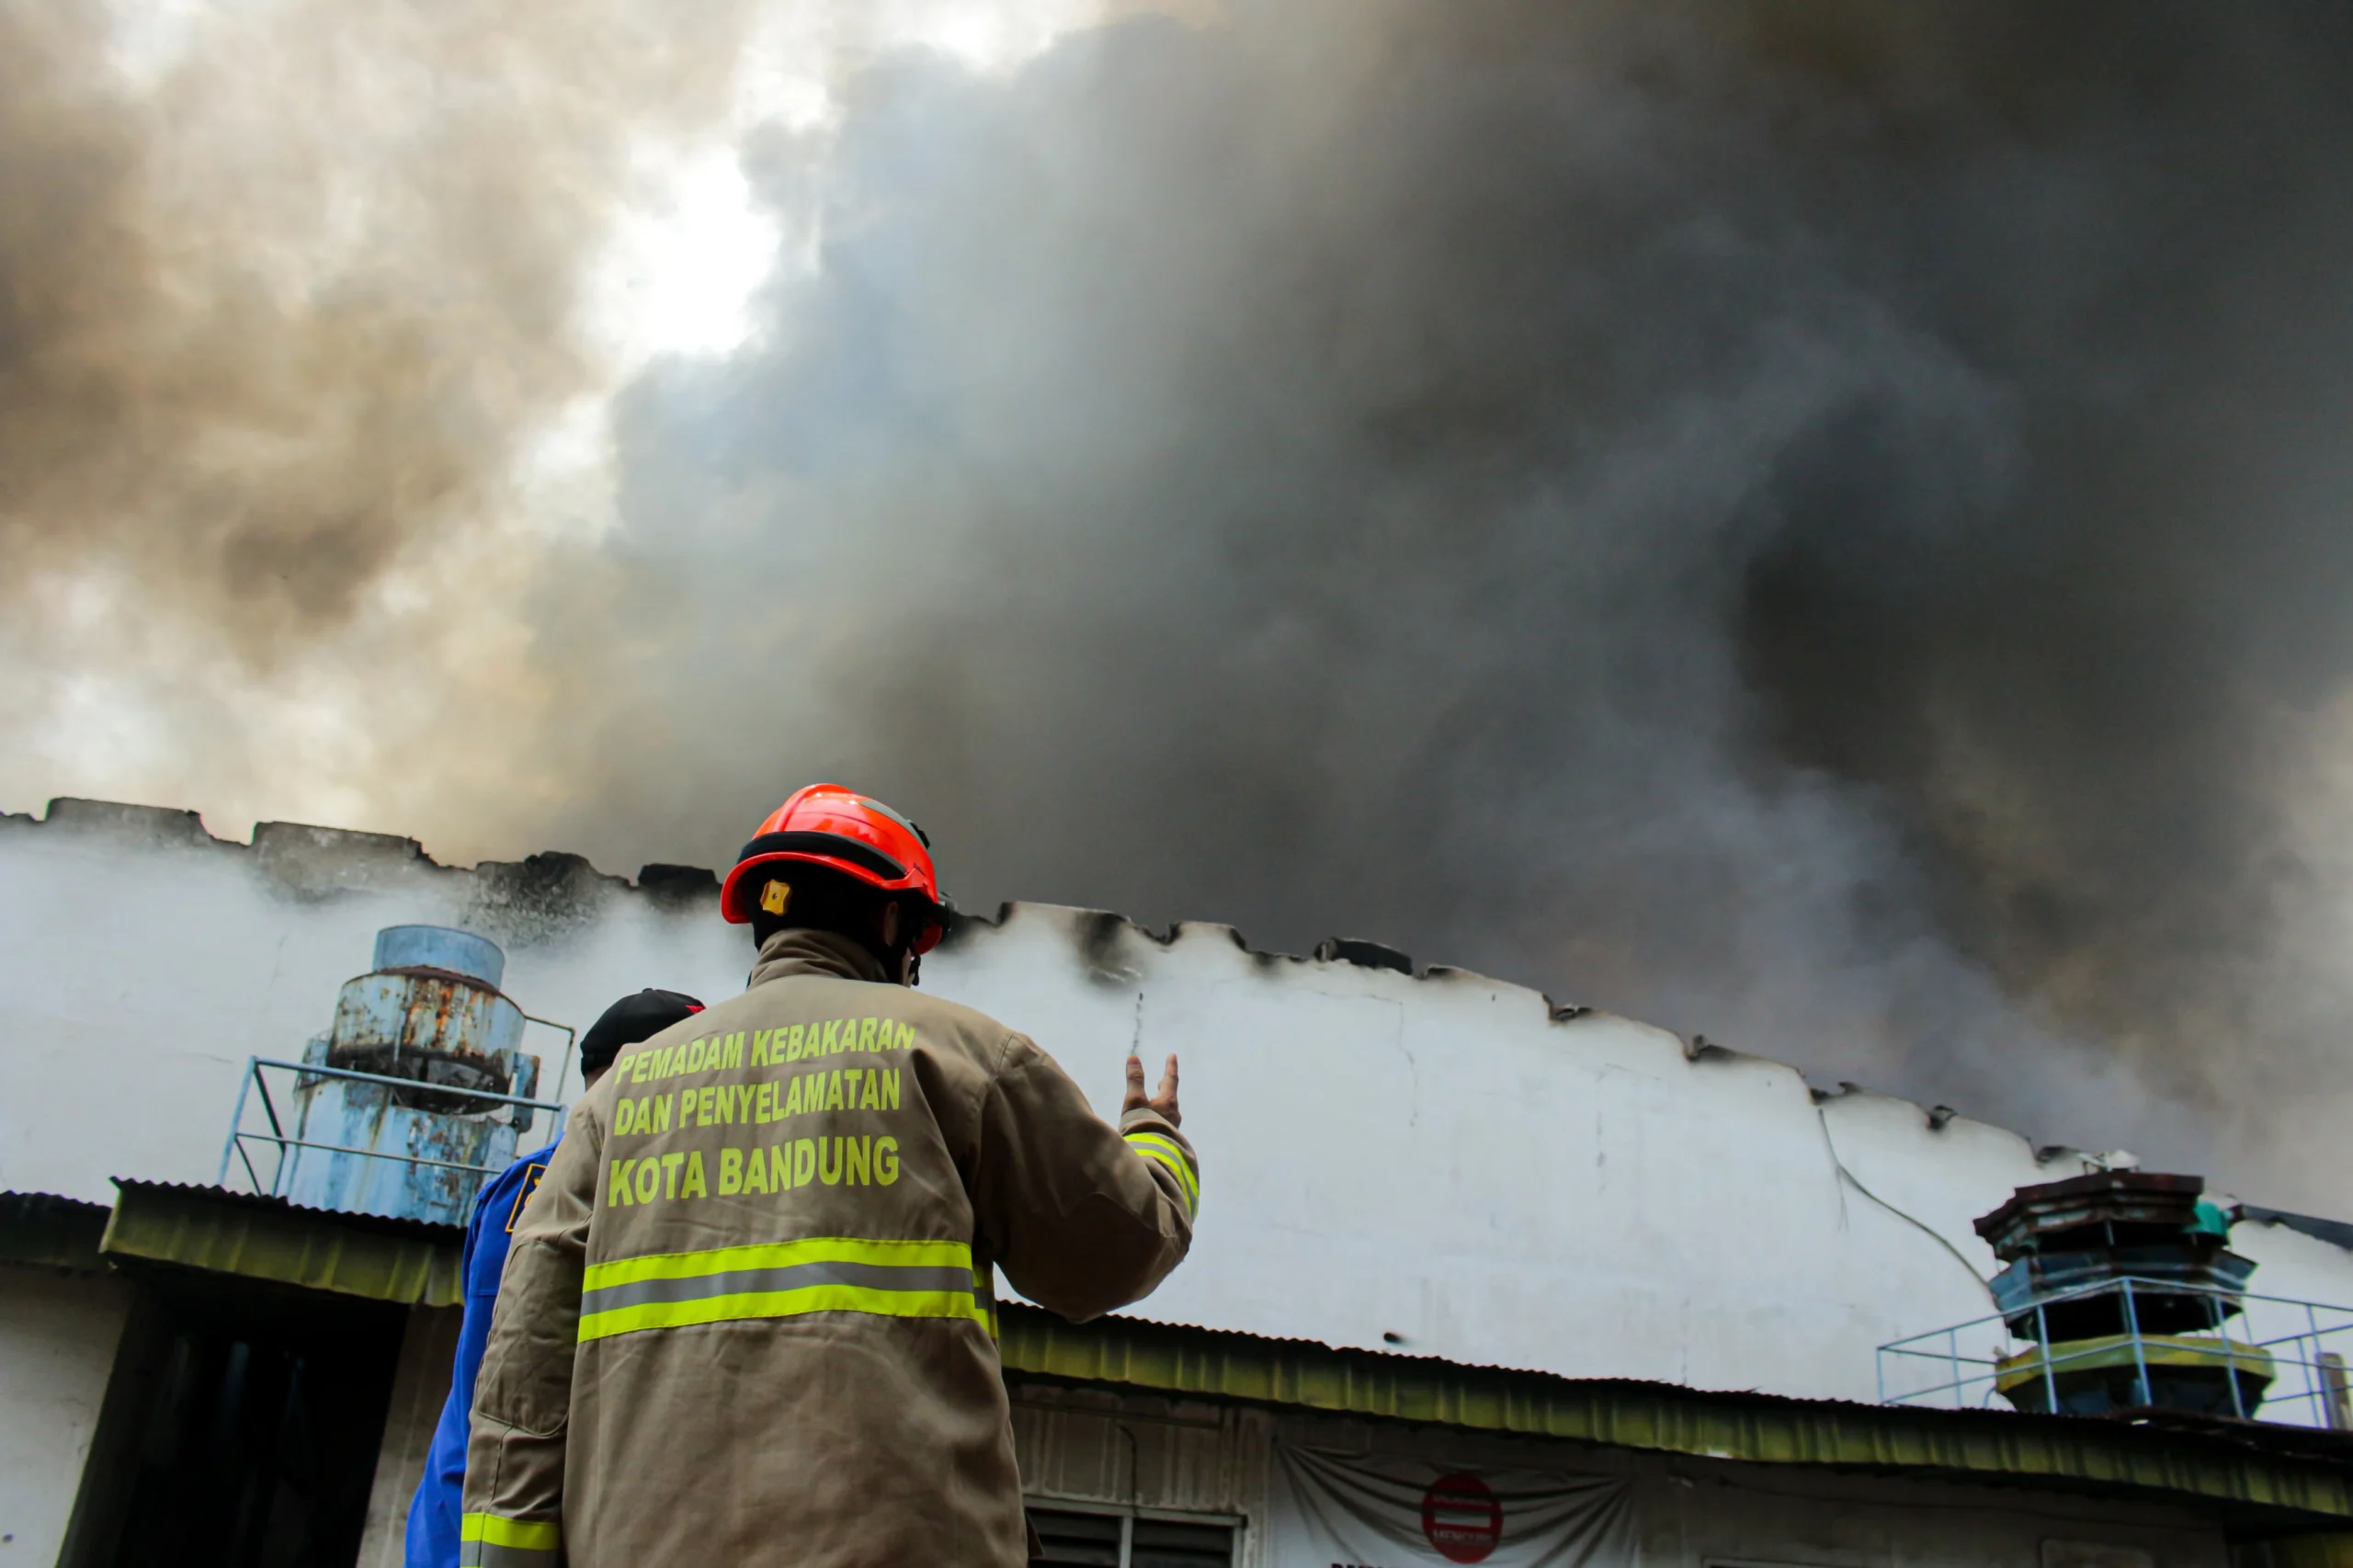 Petugas Diskar PB Kota Bandung berkoordinasi saat pemadam api di Gudang PT. Kasta Timbul, Cipadung, Kota Bandung (Pandu Muslim / Jabar Ekspres)